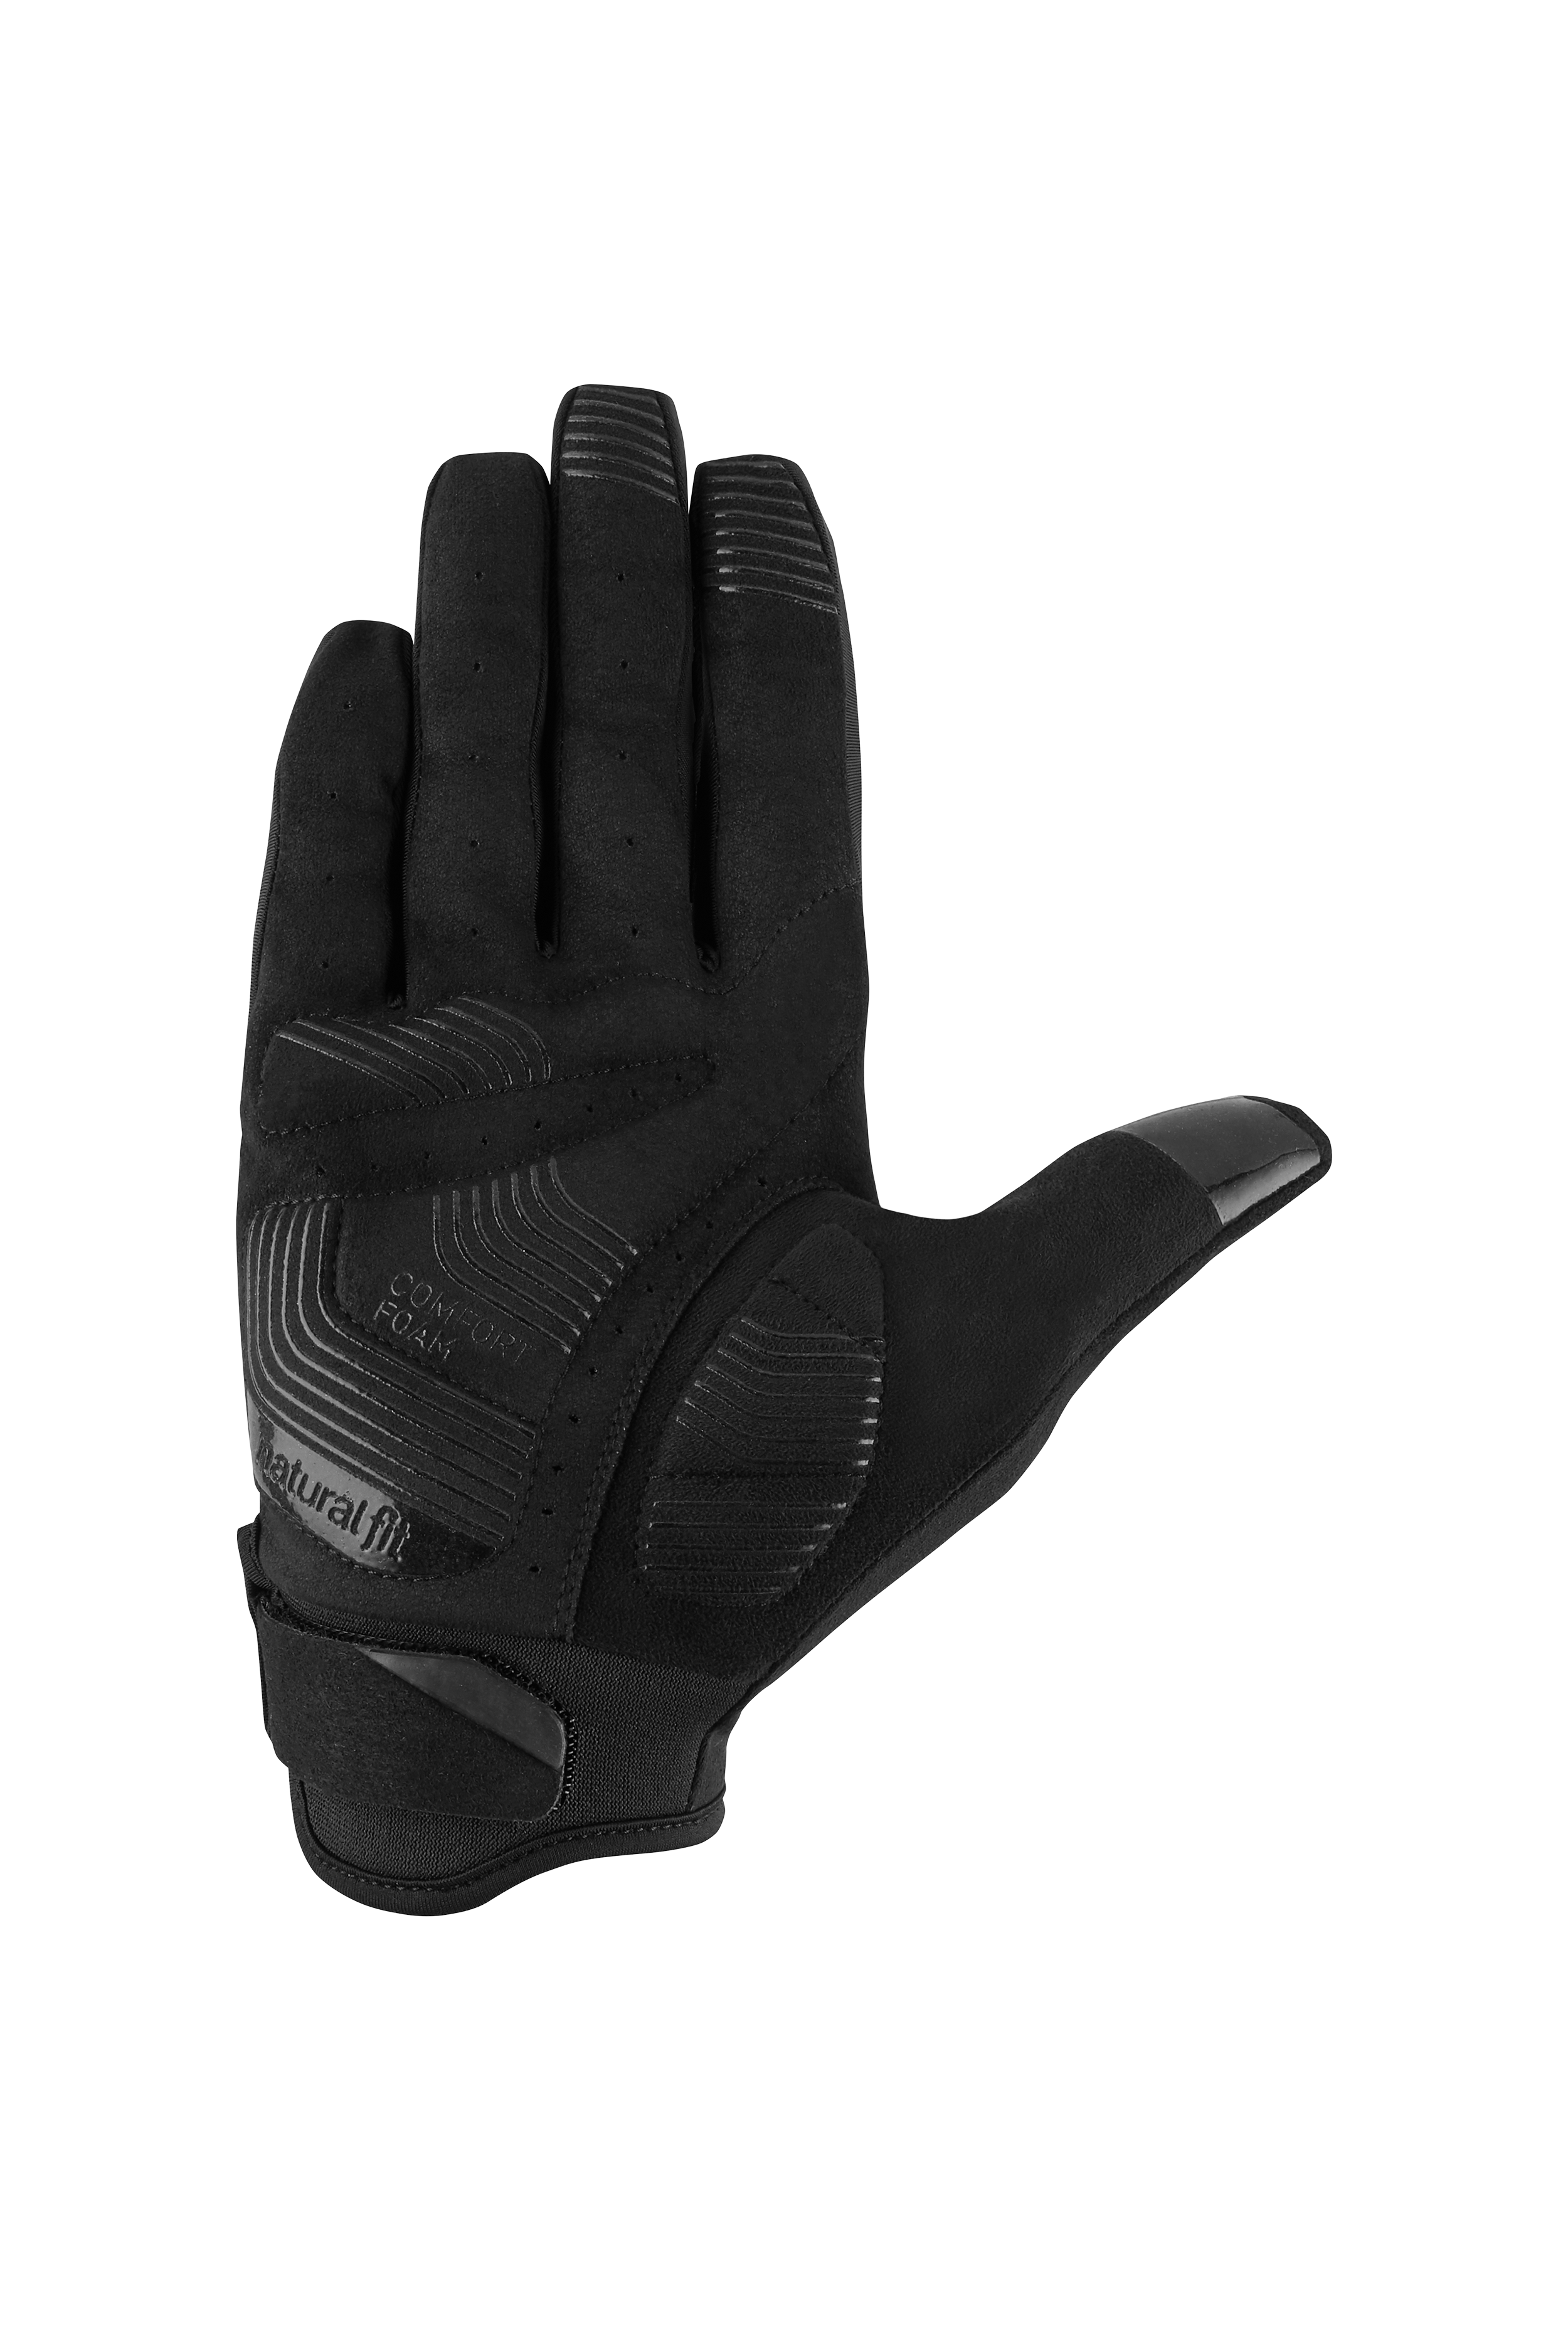 Handschuhe langfinger X NF